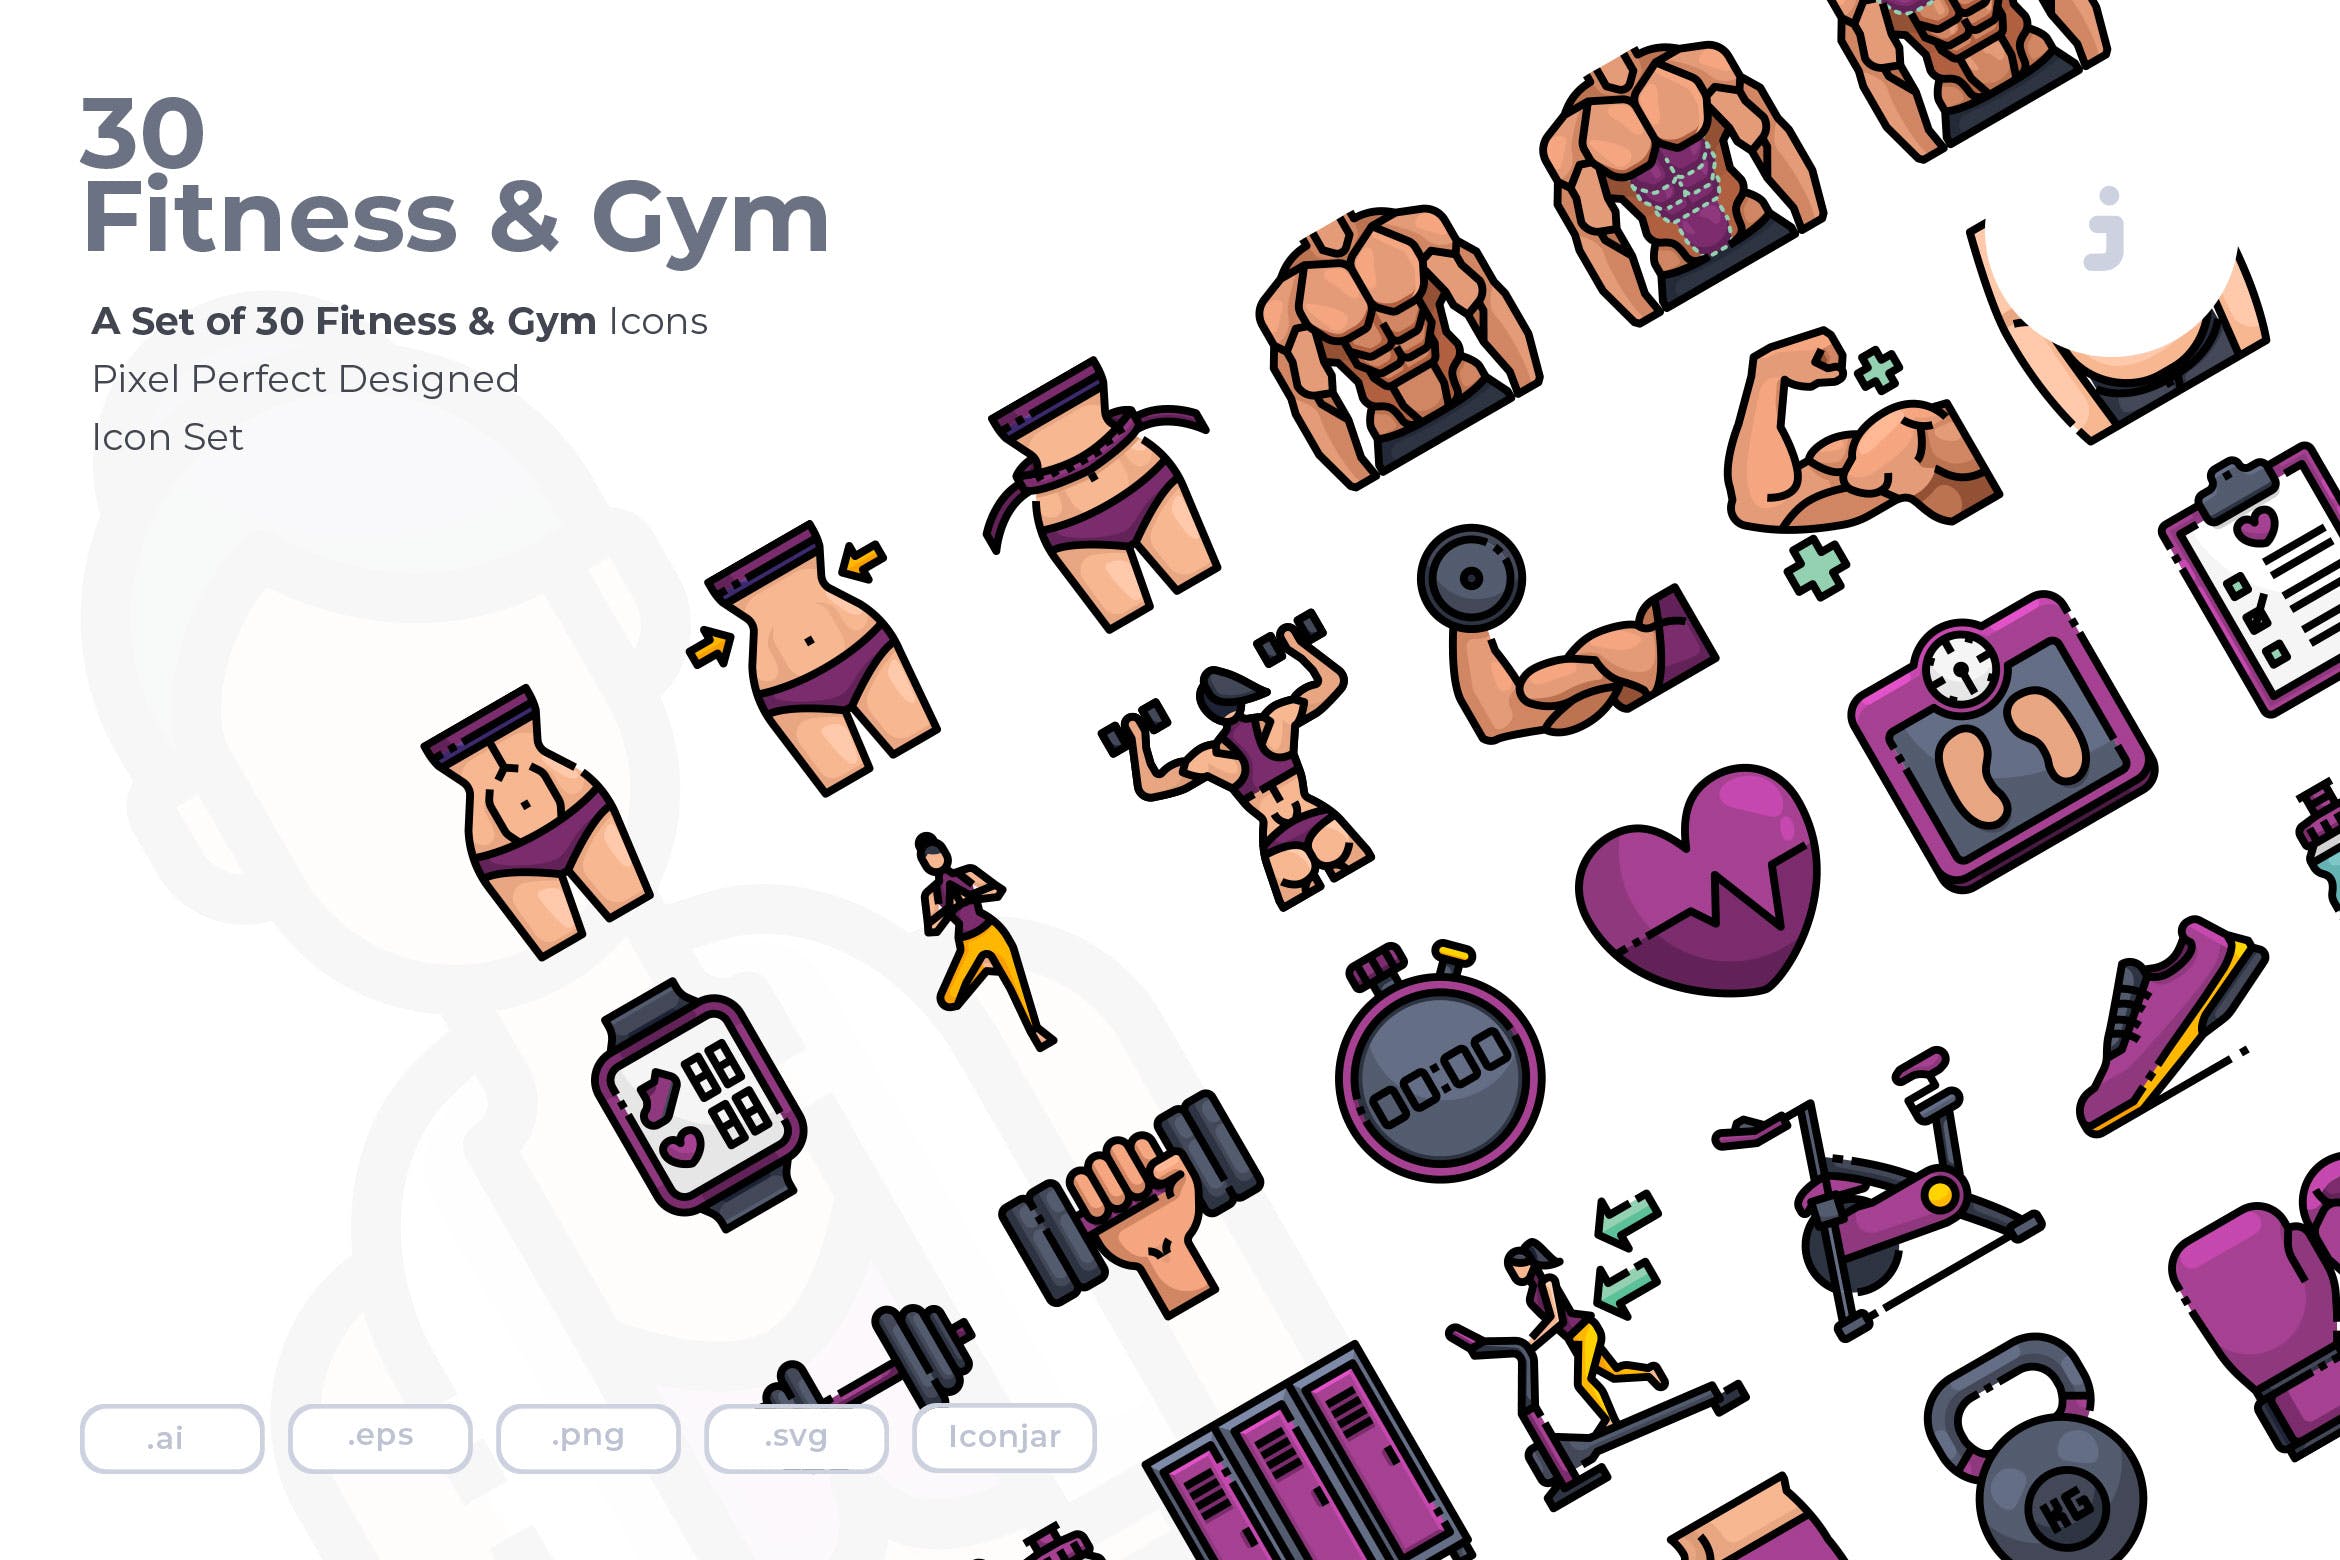 30枚健身运动主题矢量蚂蚁素材精选图标 30 Fitness & Gym Icons插图